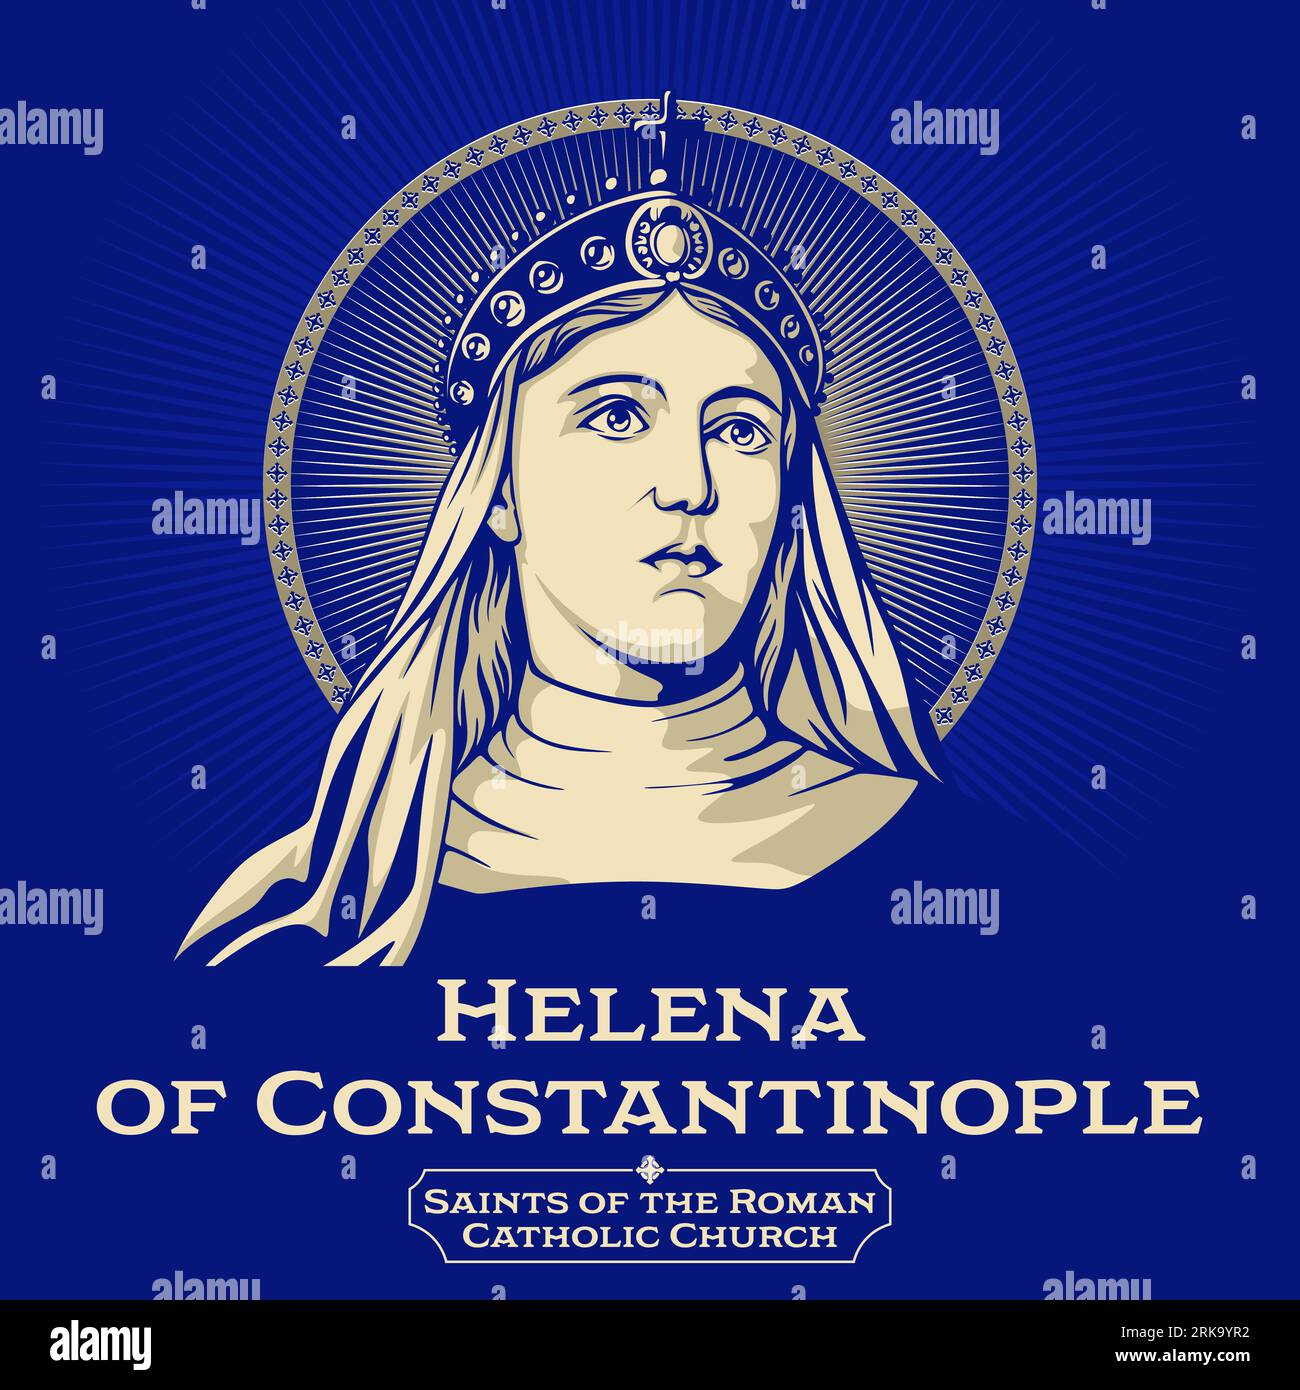 Saints catholiques. Hélène de Constantinople (246-330) était une Augusta de l'Empire romain et mère de l'empereur Constantin le Grand. Illustration de Vecteur